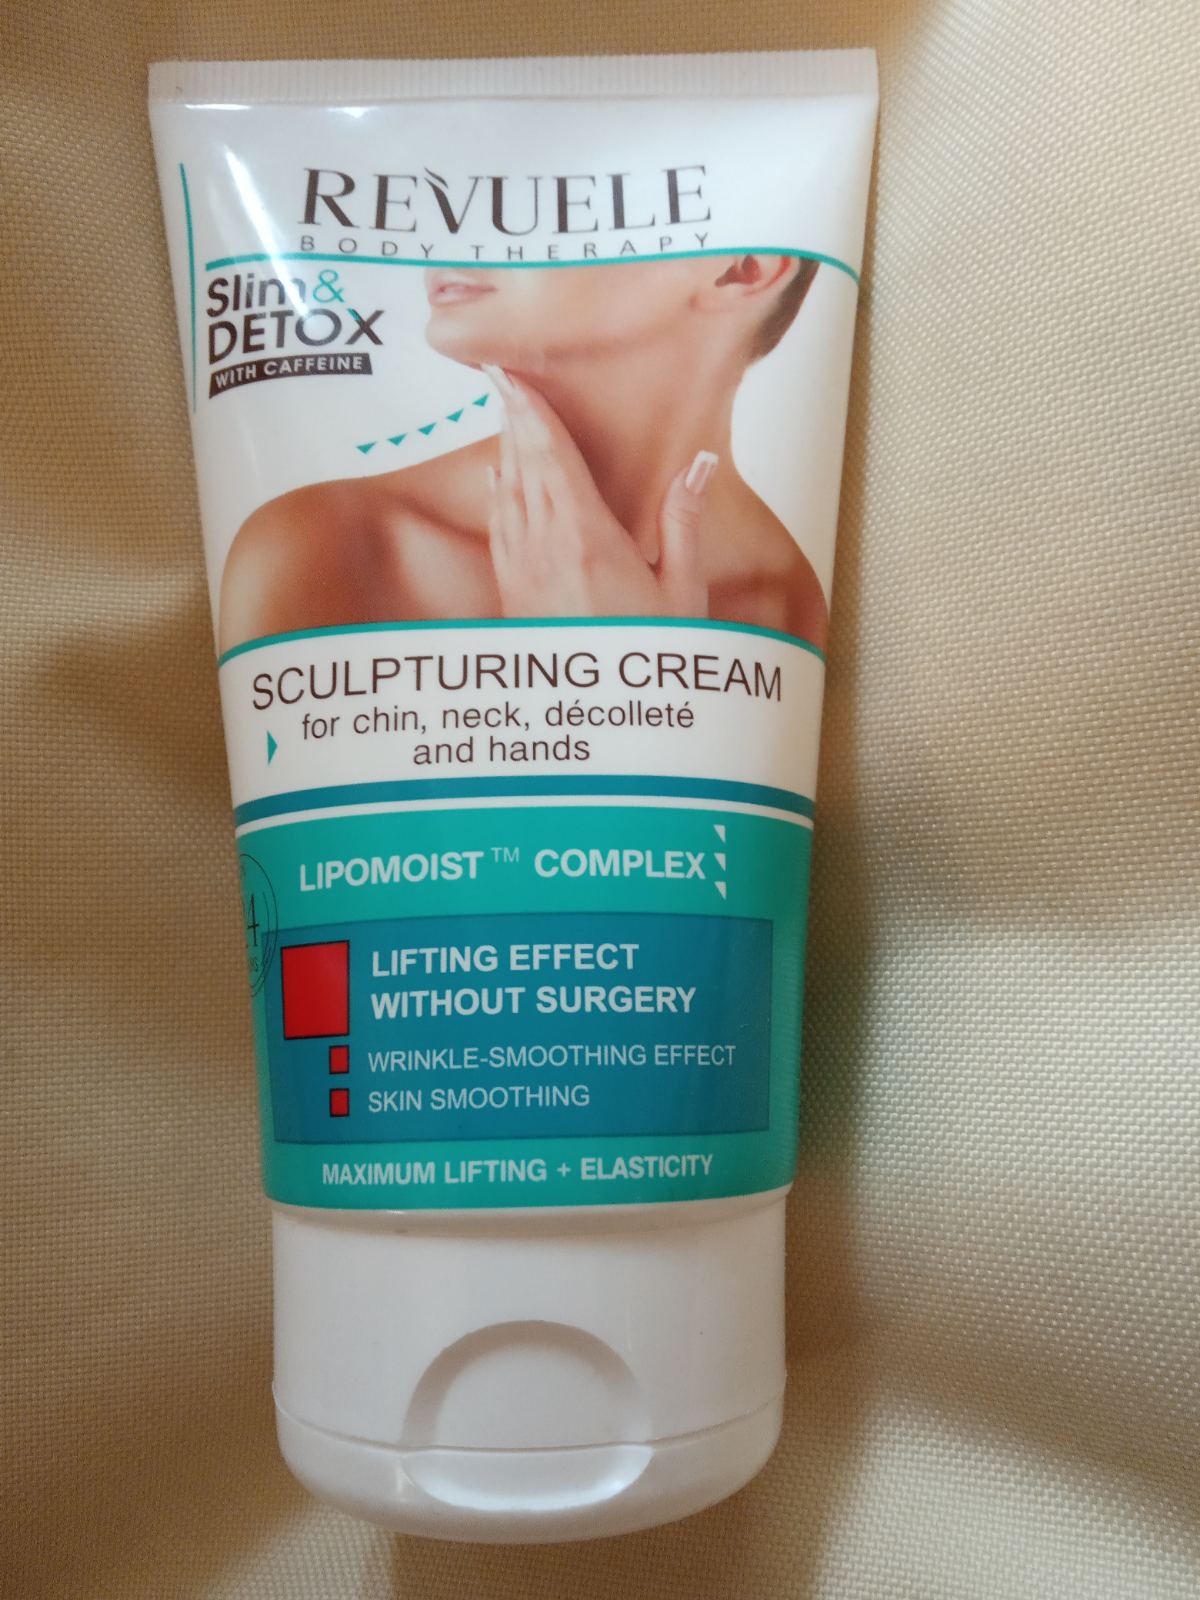 Revuele Slim&Detox Sculpting Cream